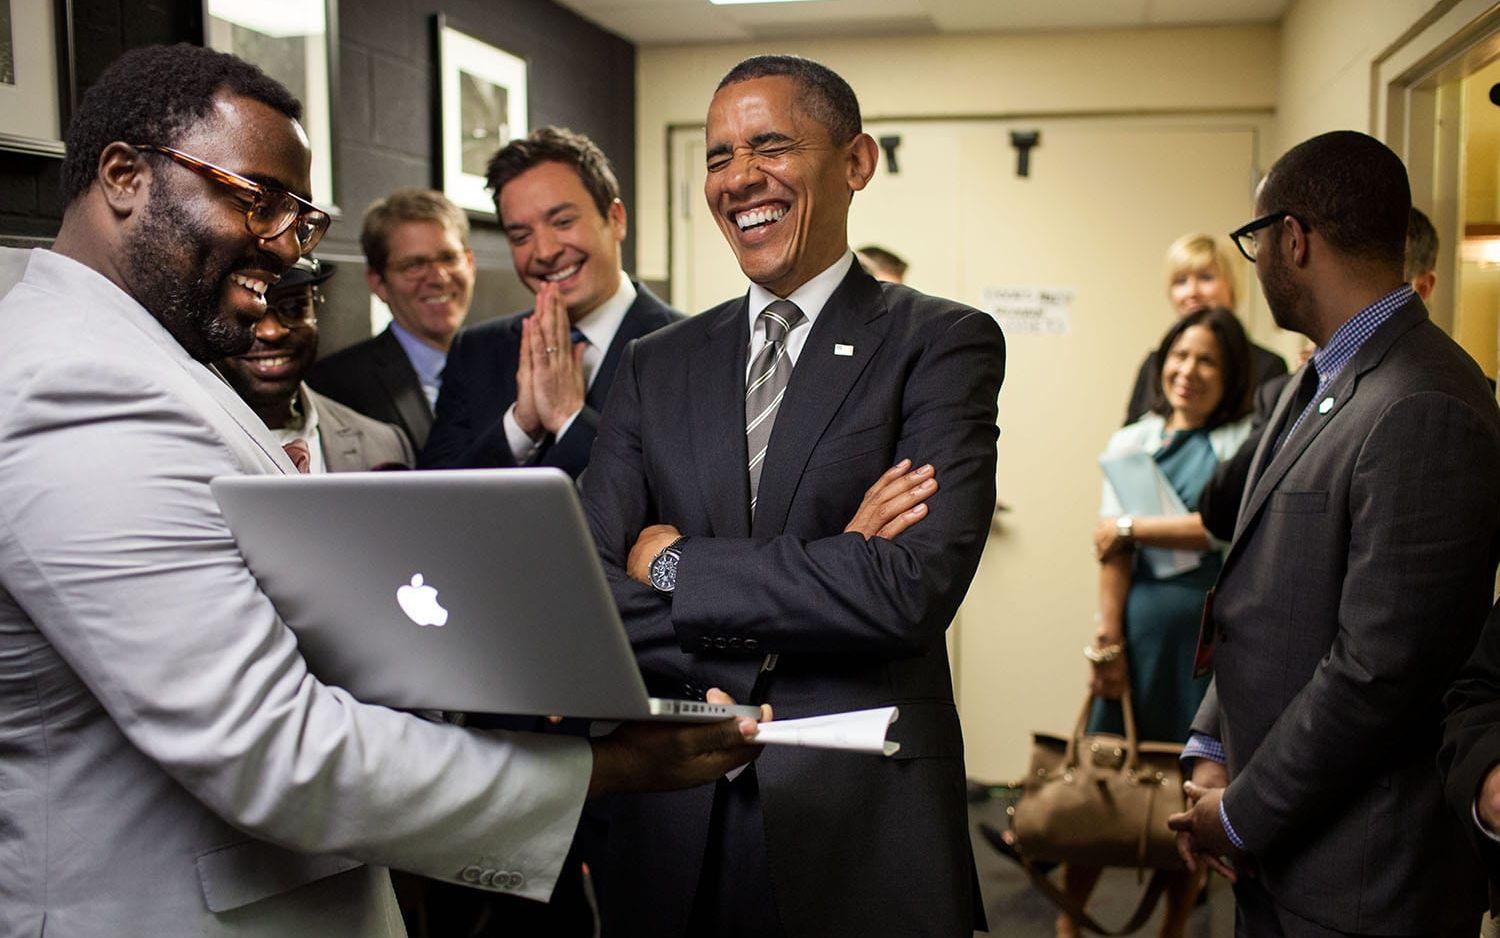 24 april, 2012: Barack Obama skrattar när han får en genomgång av tv-programmet Late night with Jimmy Fallon som han ska medverka i. Segmentet Slow jam the news med barack Obama är en klassiker.  Foto: Pete Souza / Vita Huset